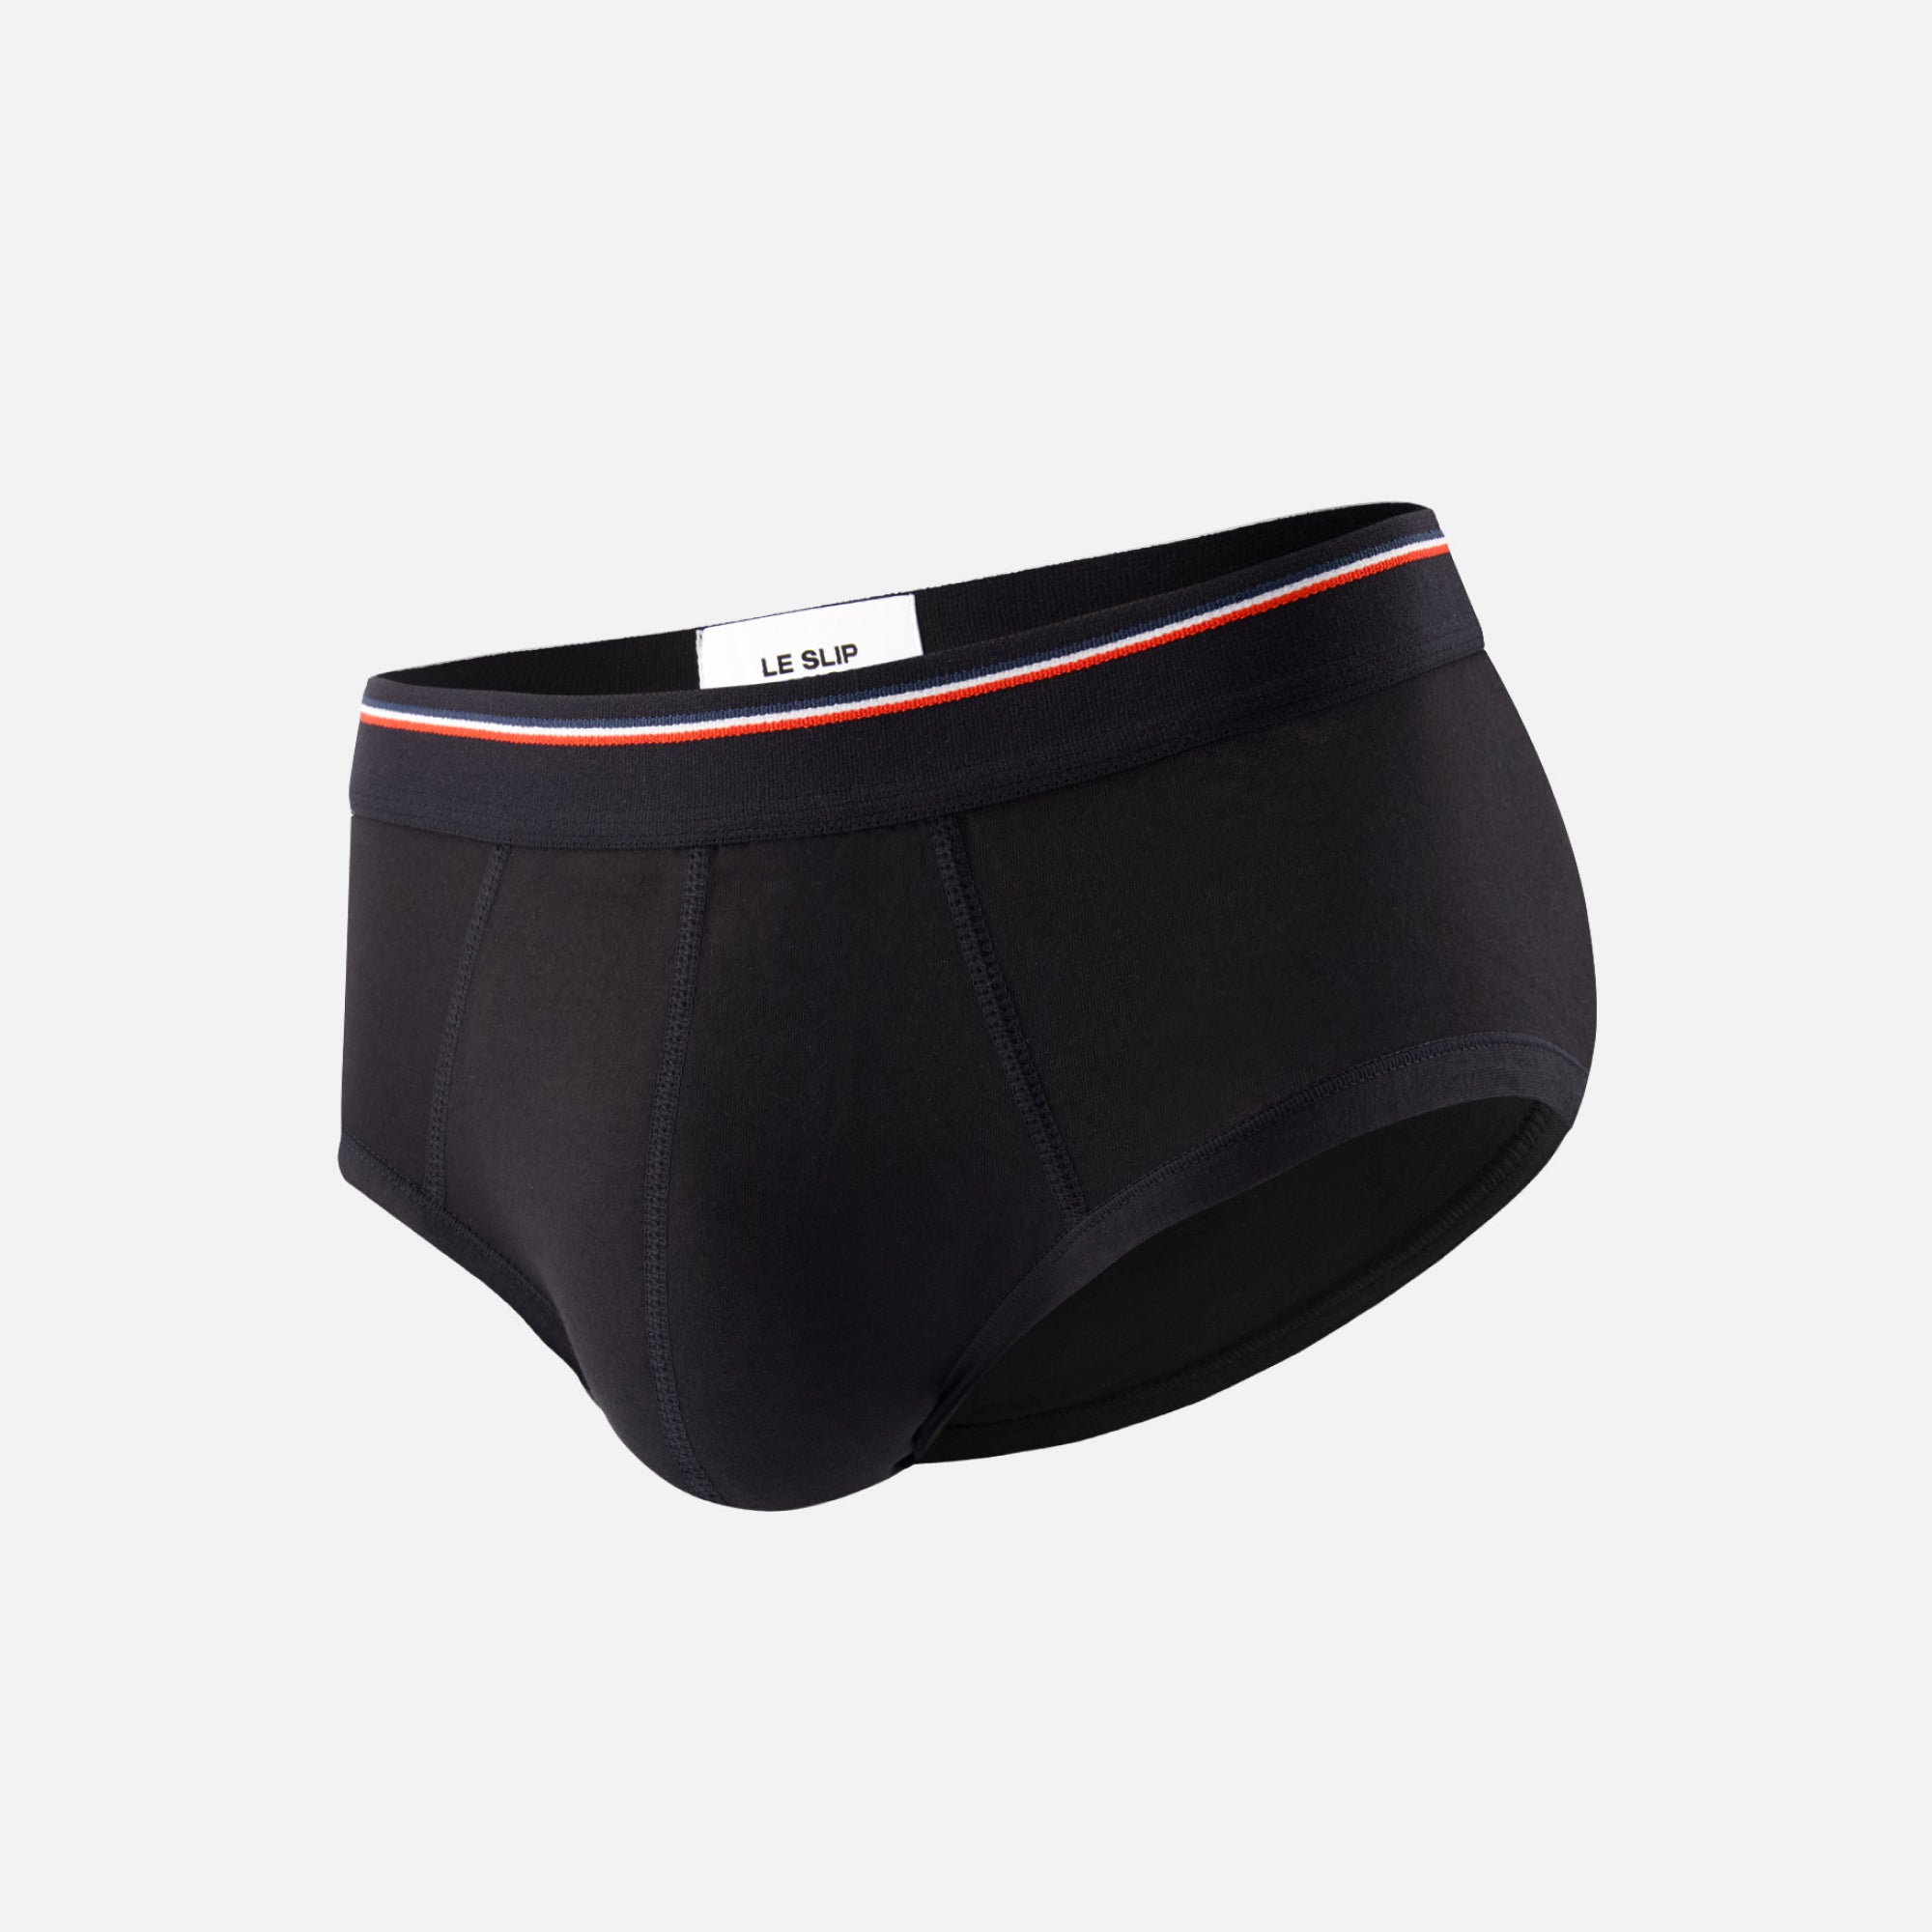 Trunks for men, men's underwear Garçon Français made in France